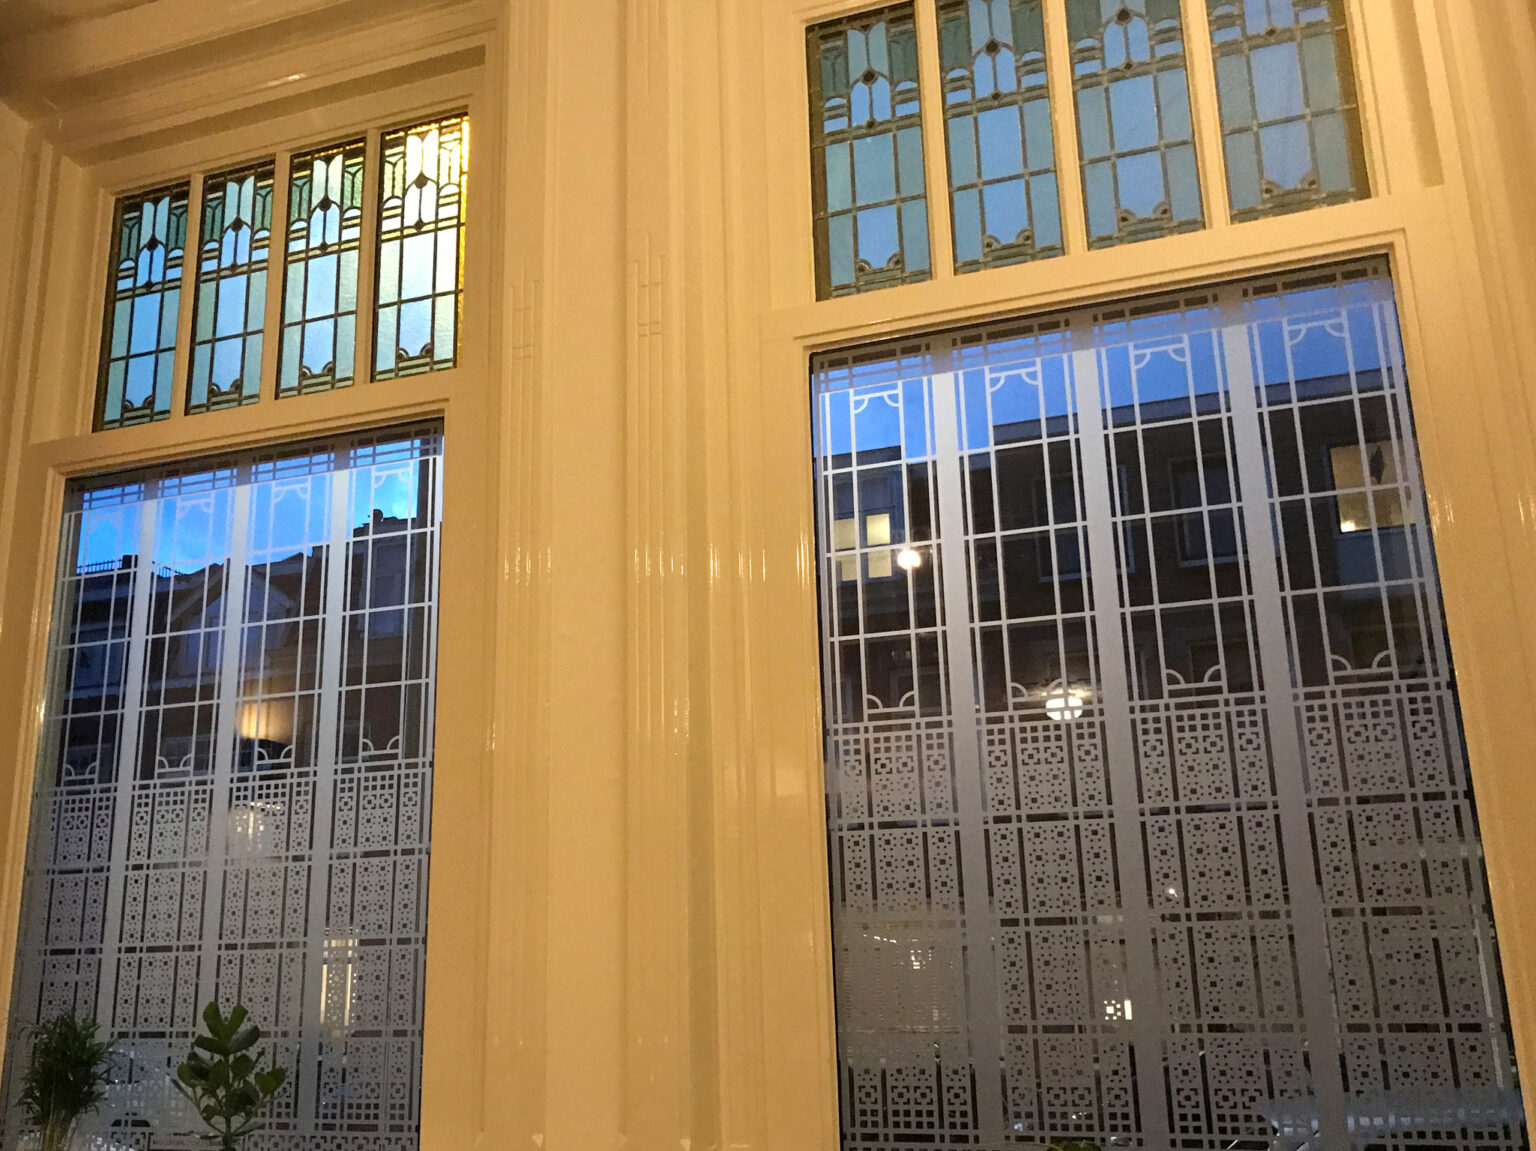 raamfolie in Art Nouveau-stijl voor woonkamer van binnen gezien.